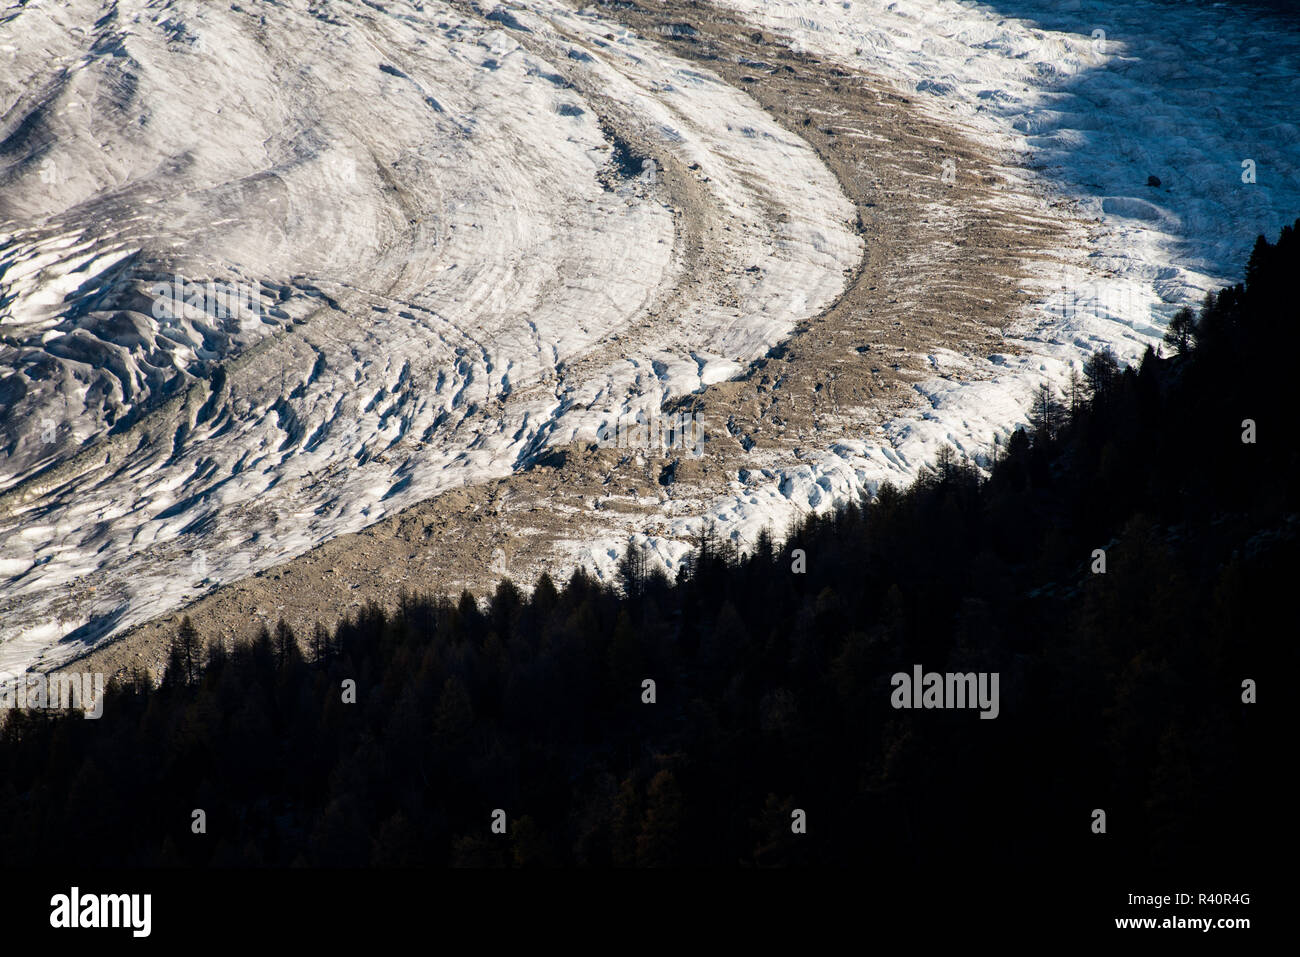 Dettaglio astratta del ghiacciaio di Aletsch che mostra le morene mediale nella massa di ghiaccio, in contrasto con la valle di foreste nell'ombra. Il ghiacciaio di Aletsch (tedesco Foto Stock